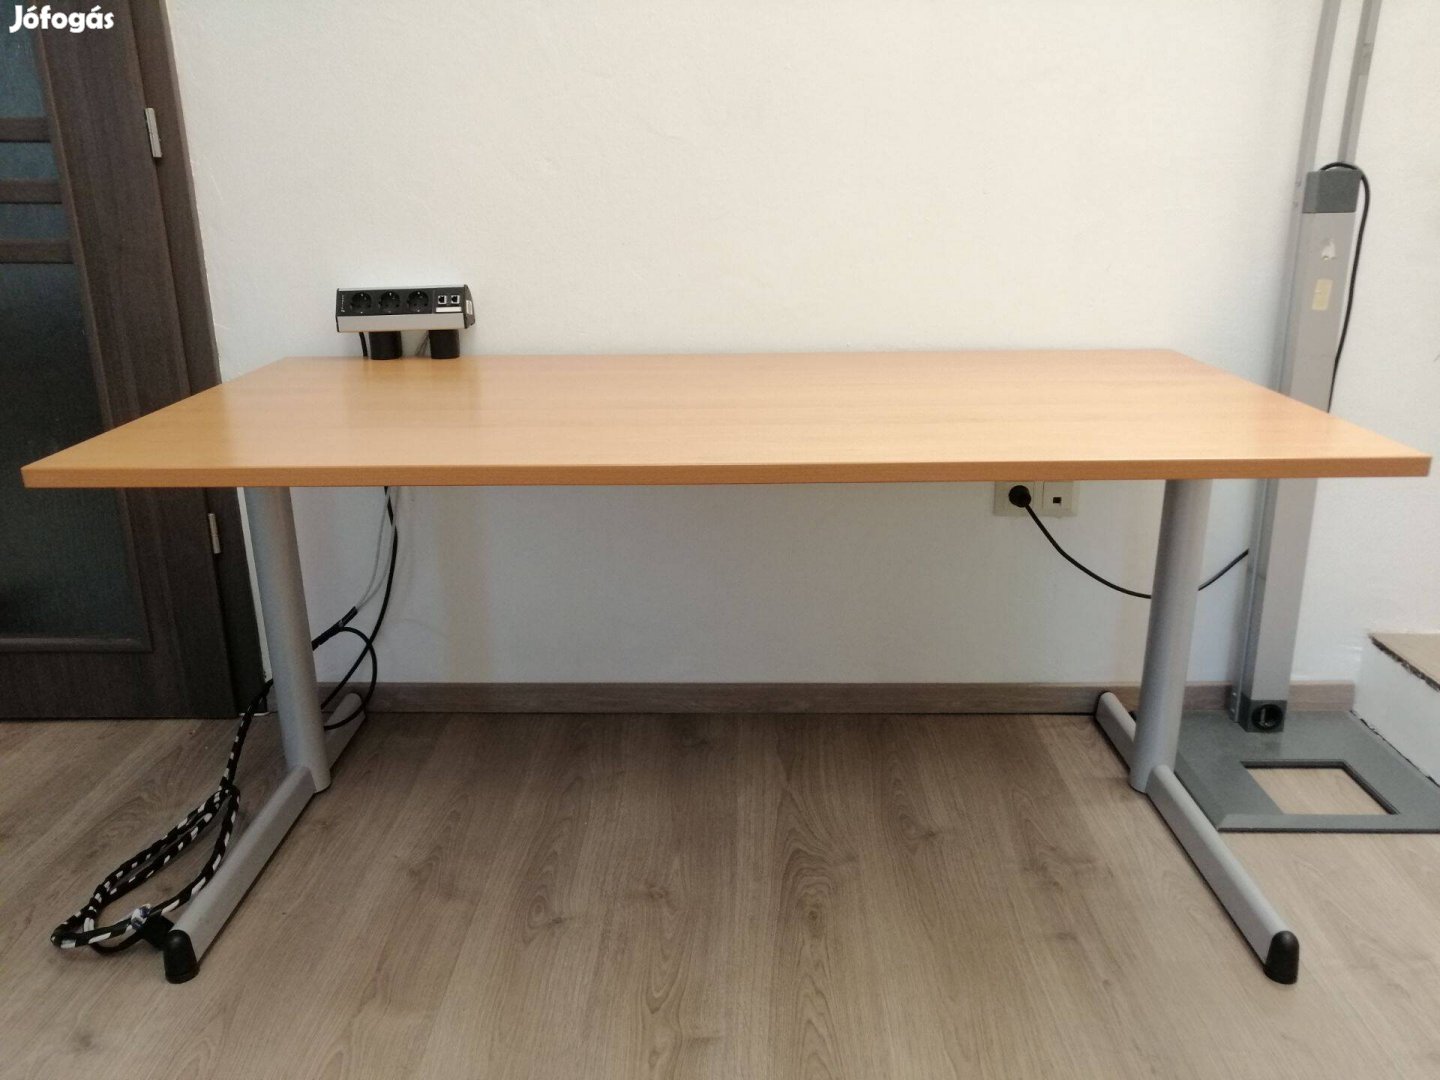 Steelcase 160 x 80 masszív irodai íróasztal töredék áron